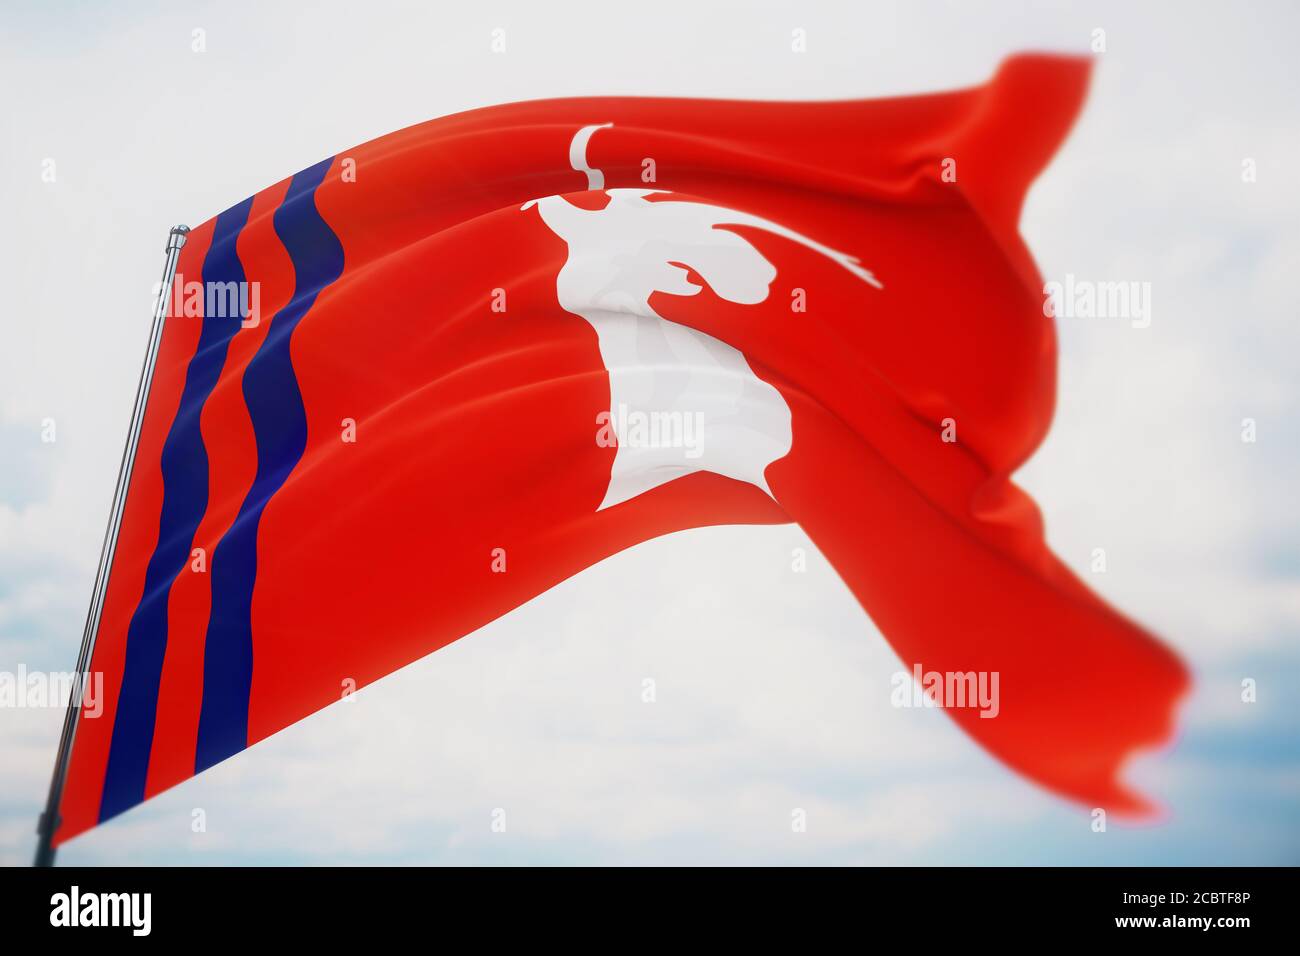 Flagge der Oblast Wolgograd. Hochauflösende Nahaufnahme-3D-Darstellung. Flaggen der föderalen Subjekte Russlands. Stockfoto